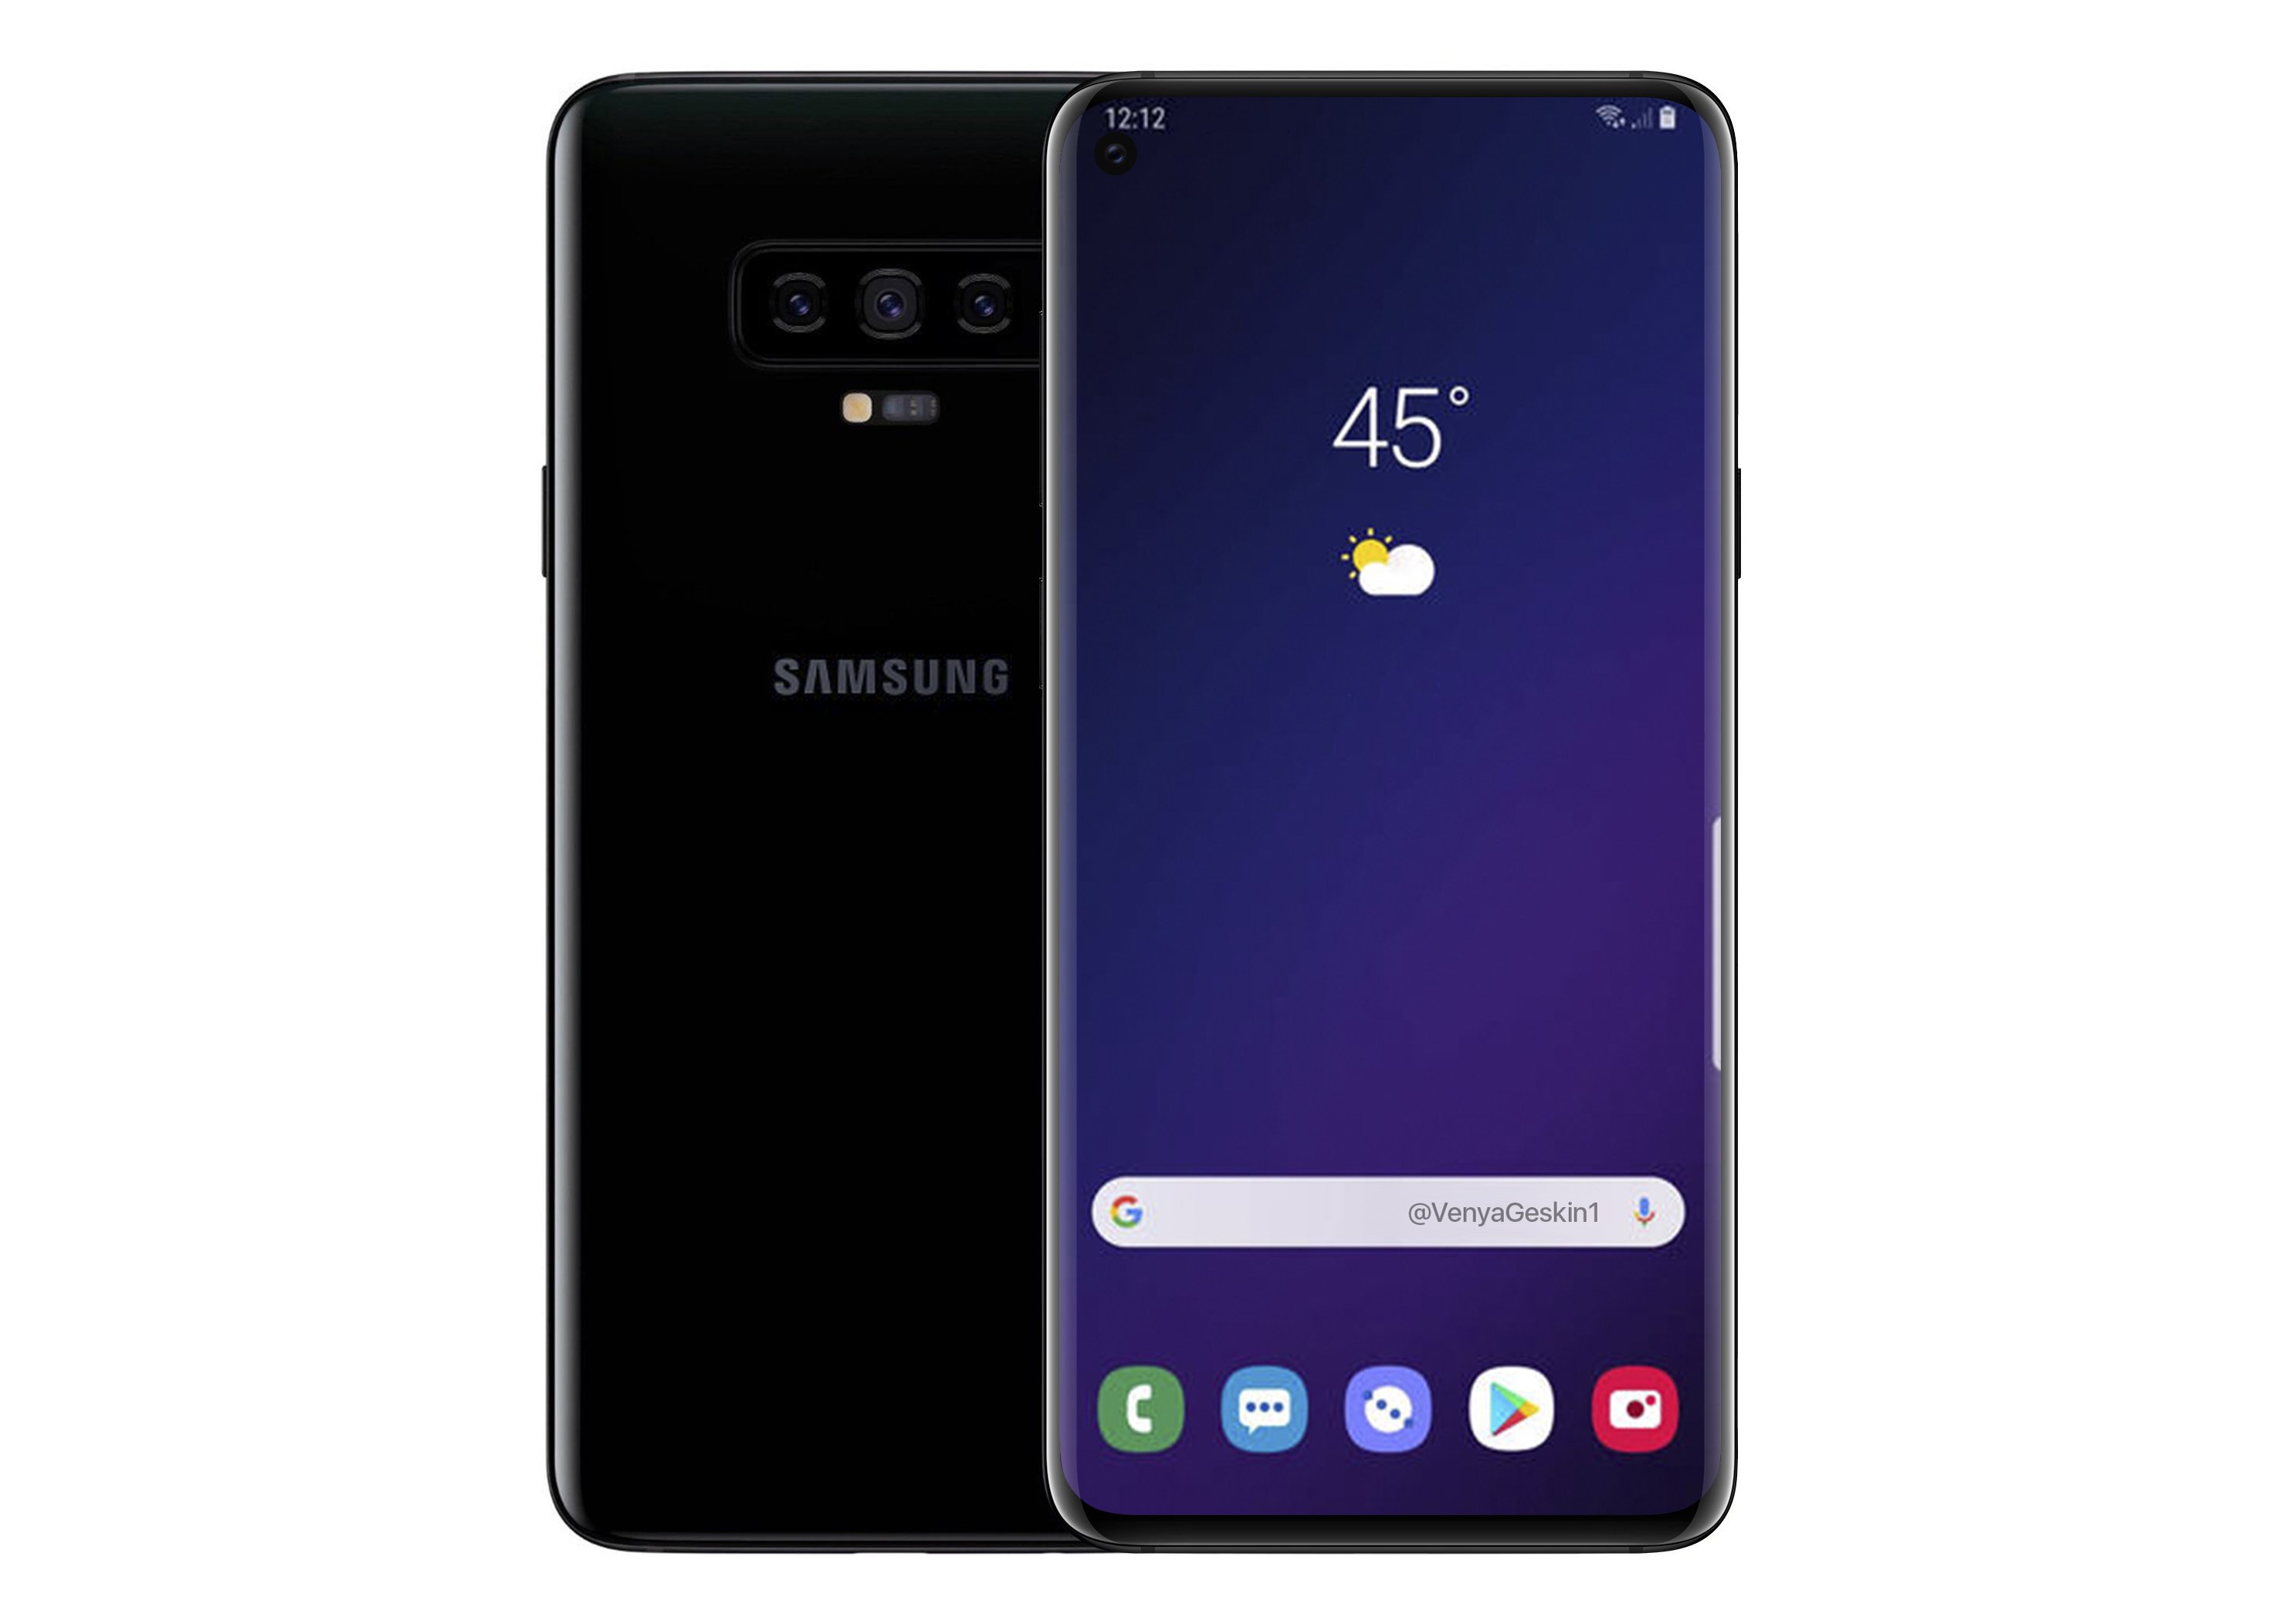 Samsung Galaxy S10 & S10 Plus render source: VenyaGeskin1/Twitter